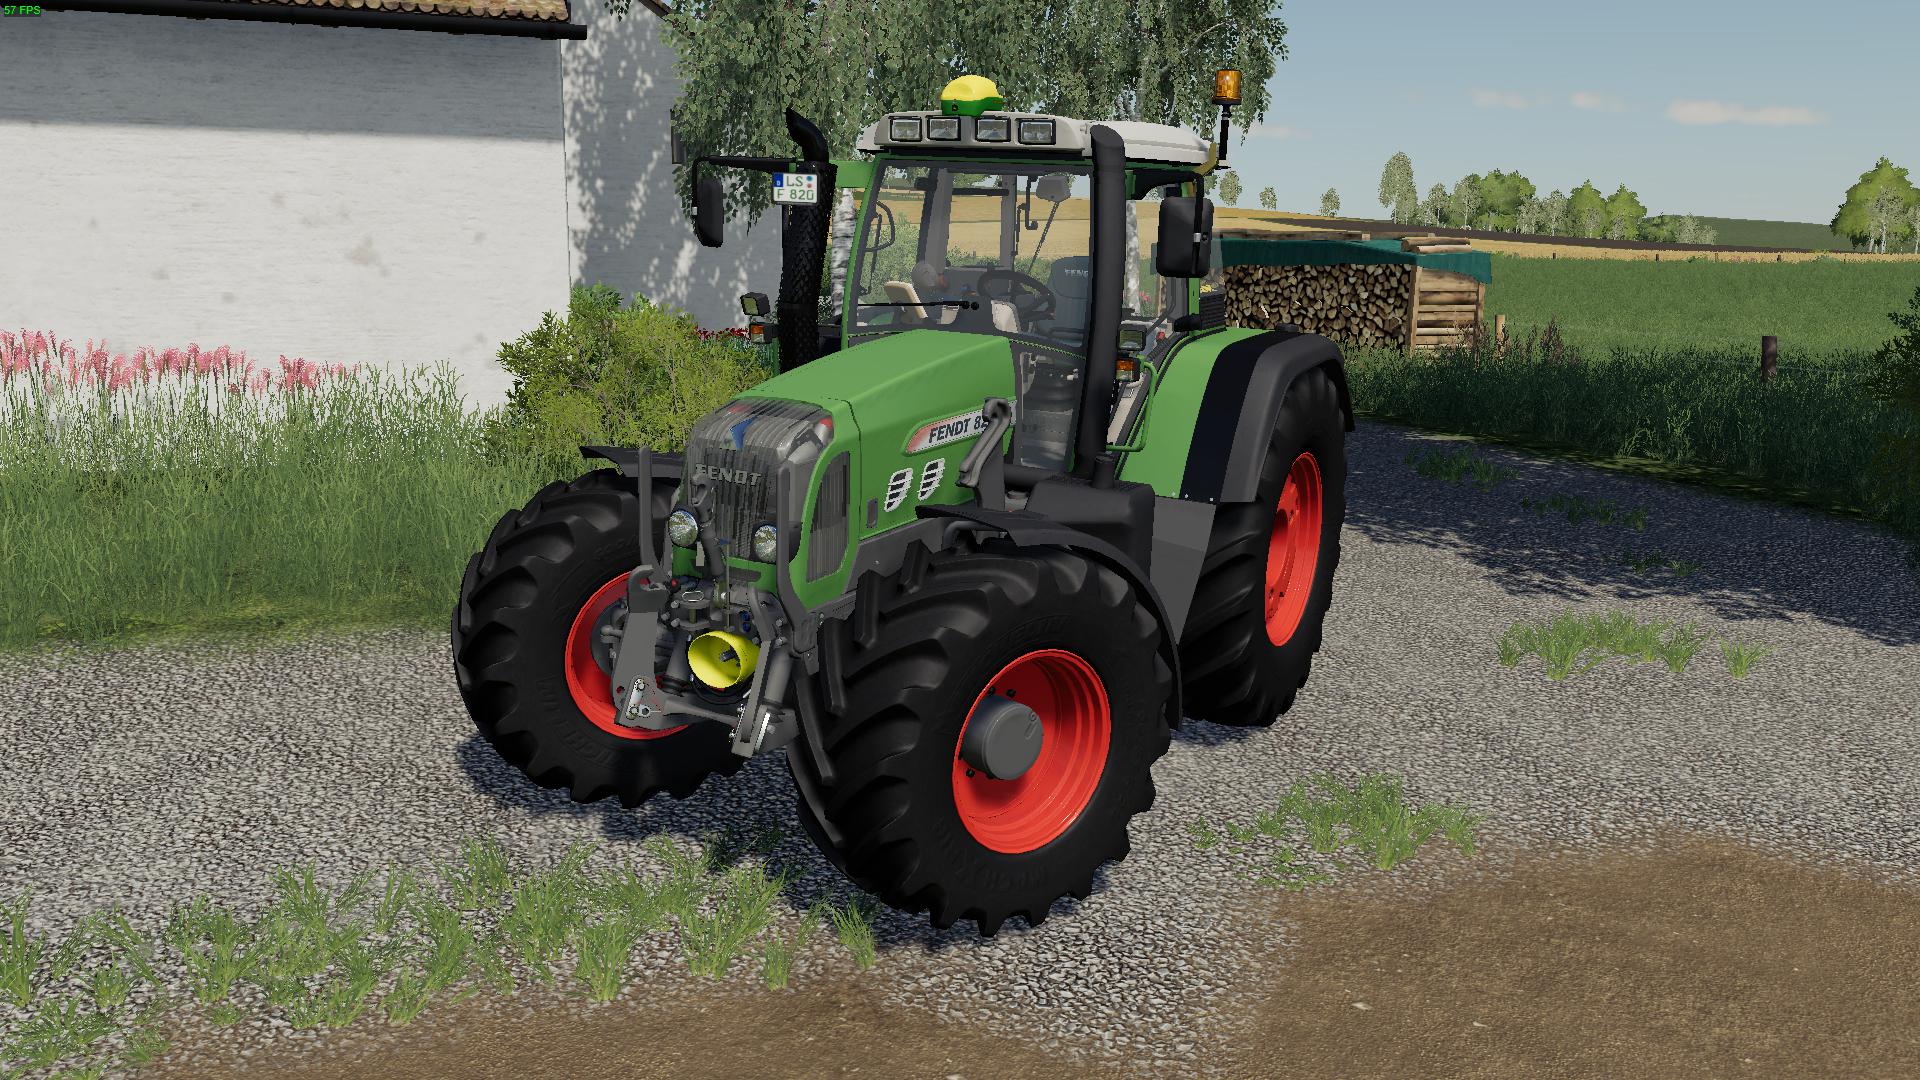 Fendt 800 Vario Tms V11 Fs19 Farming Simulator 19 Mod Fs19 Mod Images And Photos Finder 0997